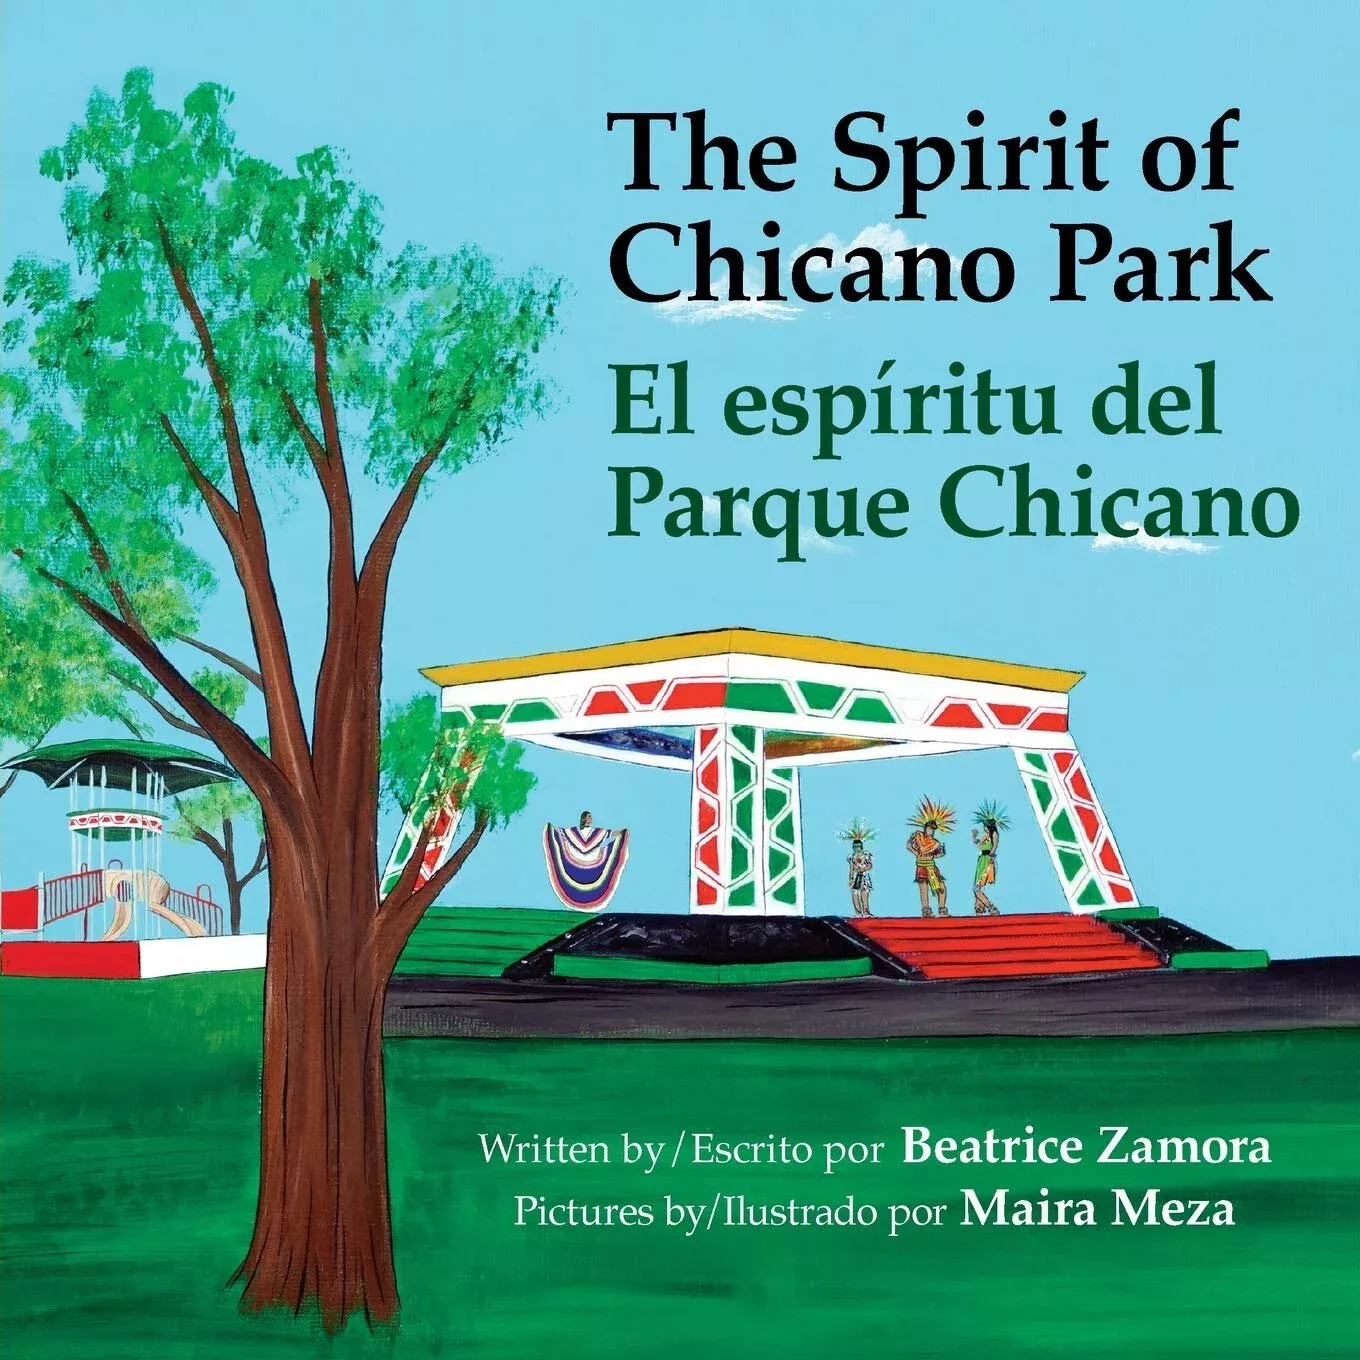 The Spirit of Chicano Park El espíritu del Parque Chicano